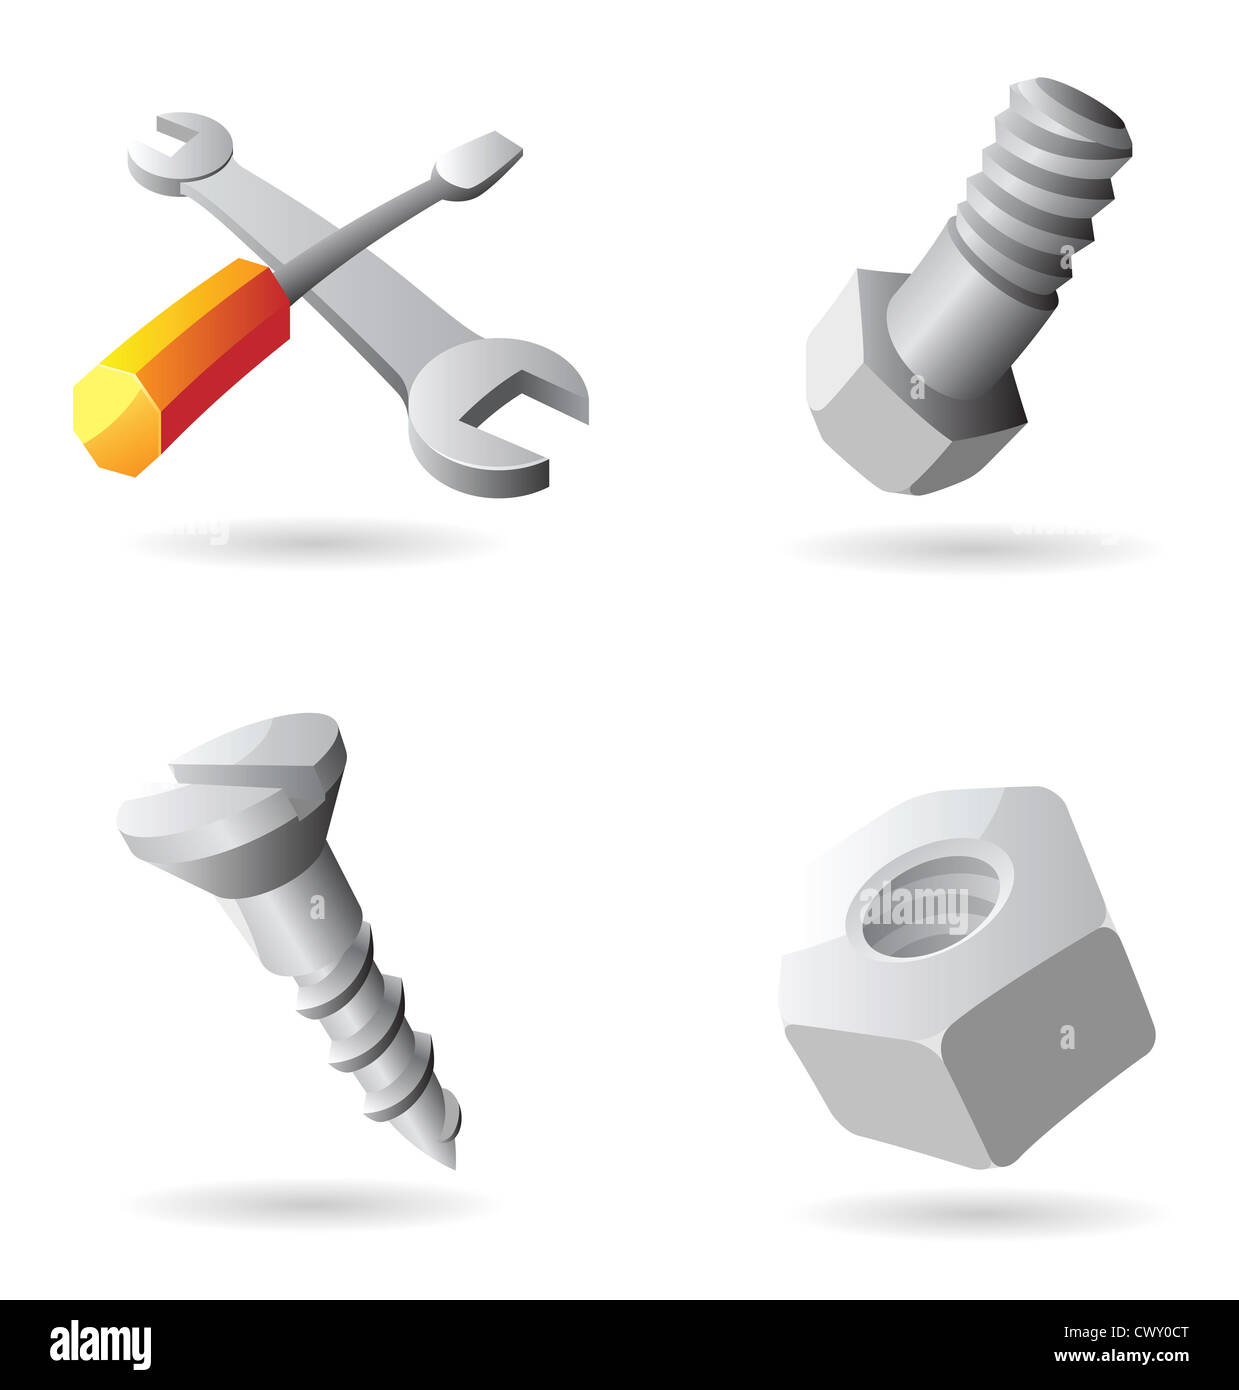 Iconos de herramientas. Foto de stock